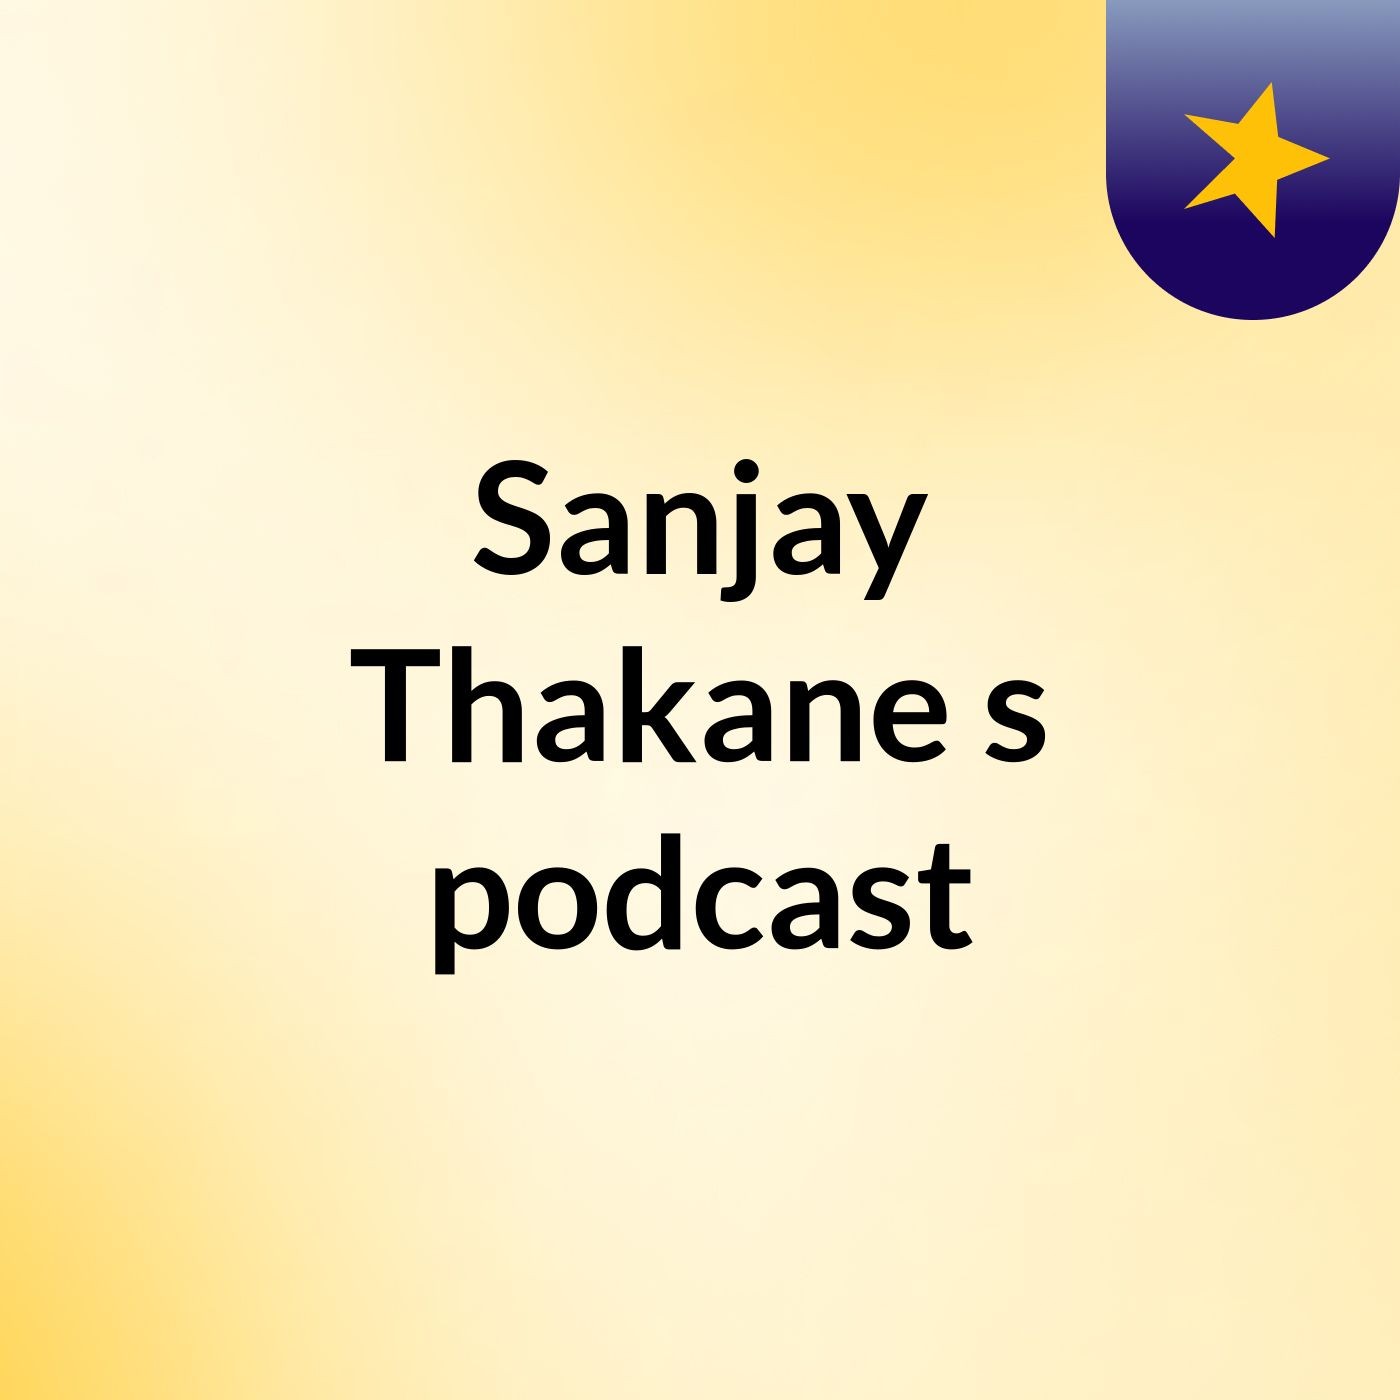 Sanjay Thakane's podcast